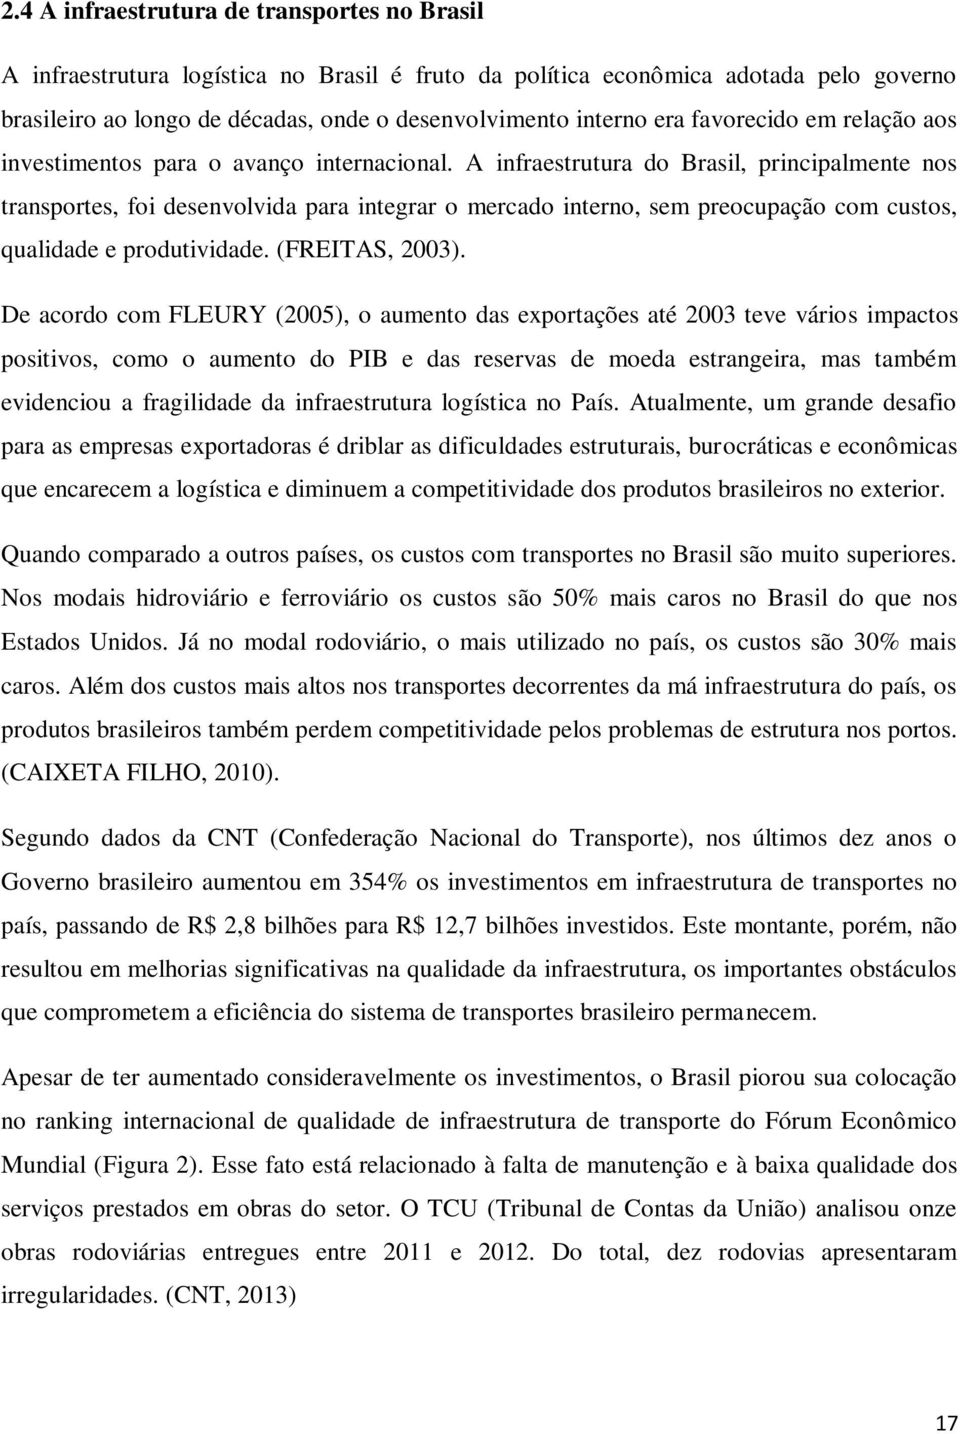 A infraestrutura do Brasil, principalmente nos transportes, foi desenvolvida para integrar o mercado interno, sem preocupação com custos, qualidade e produtividade. (FREITAS, 2003).